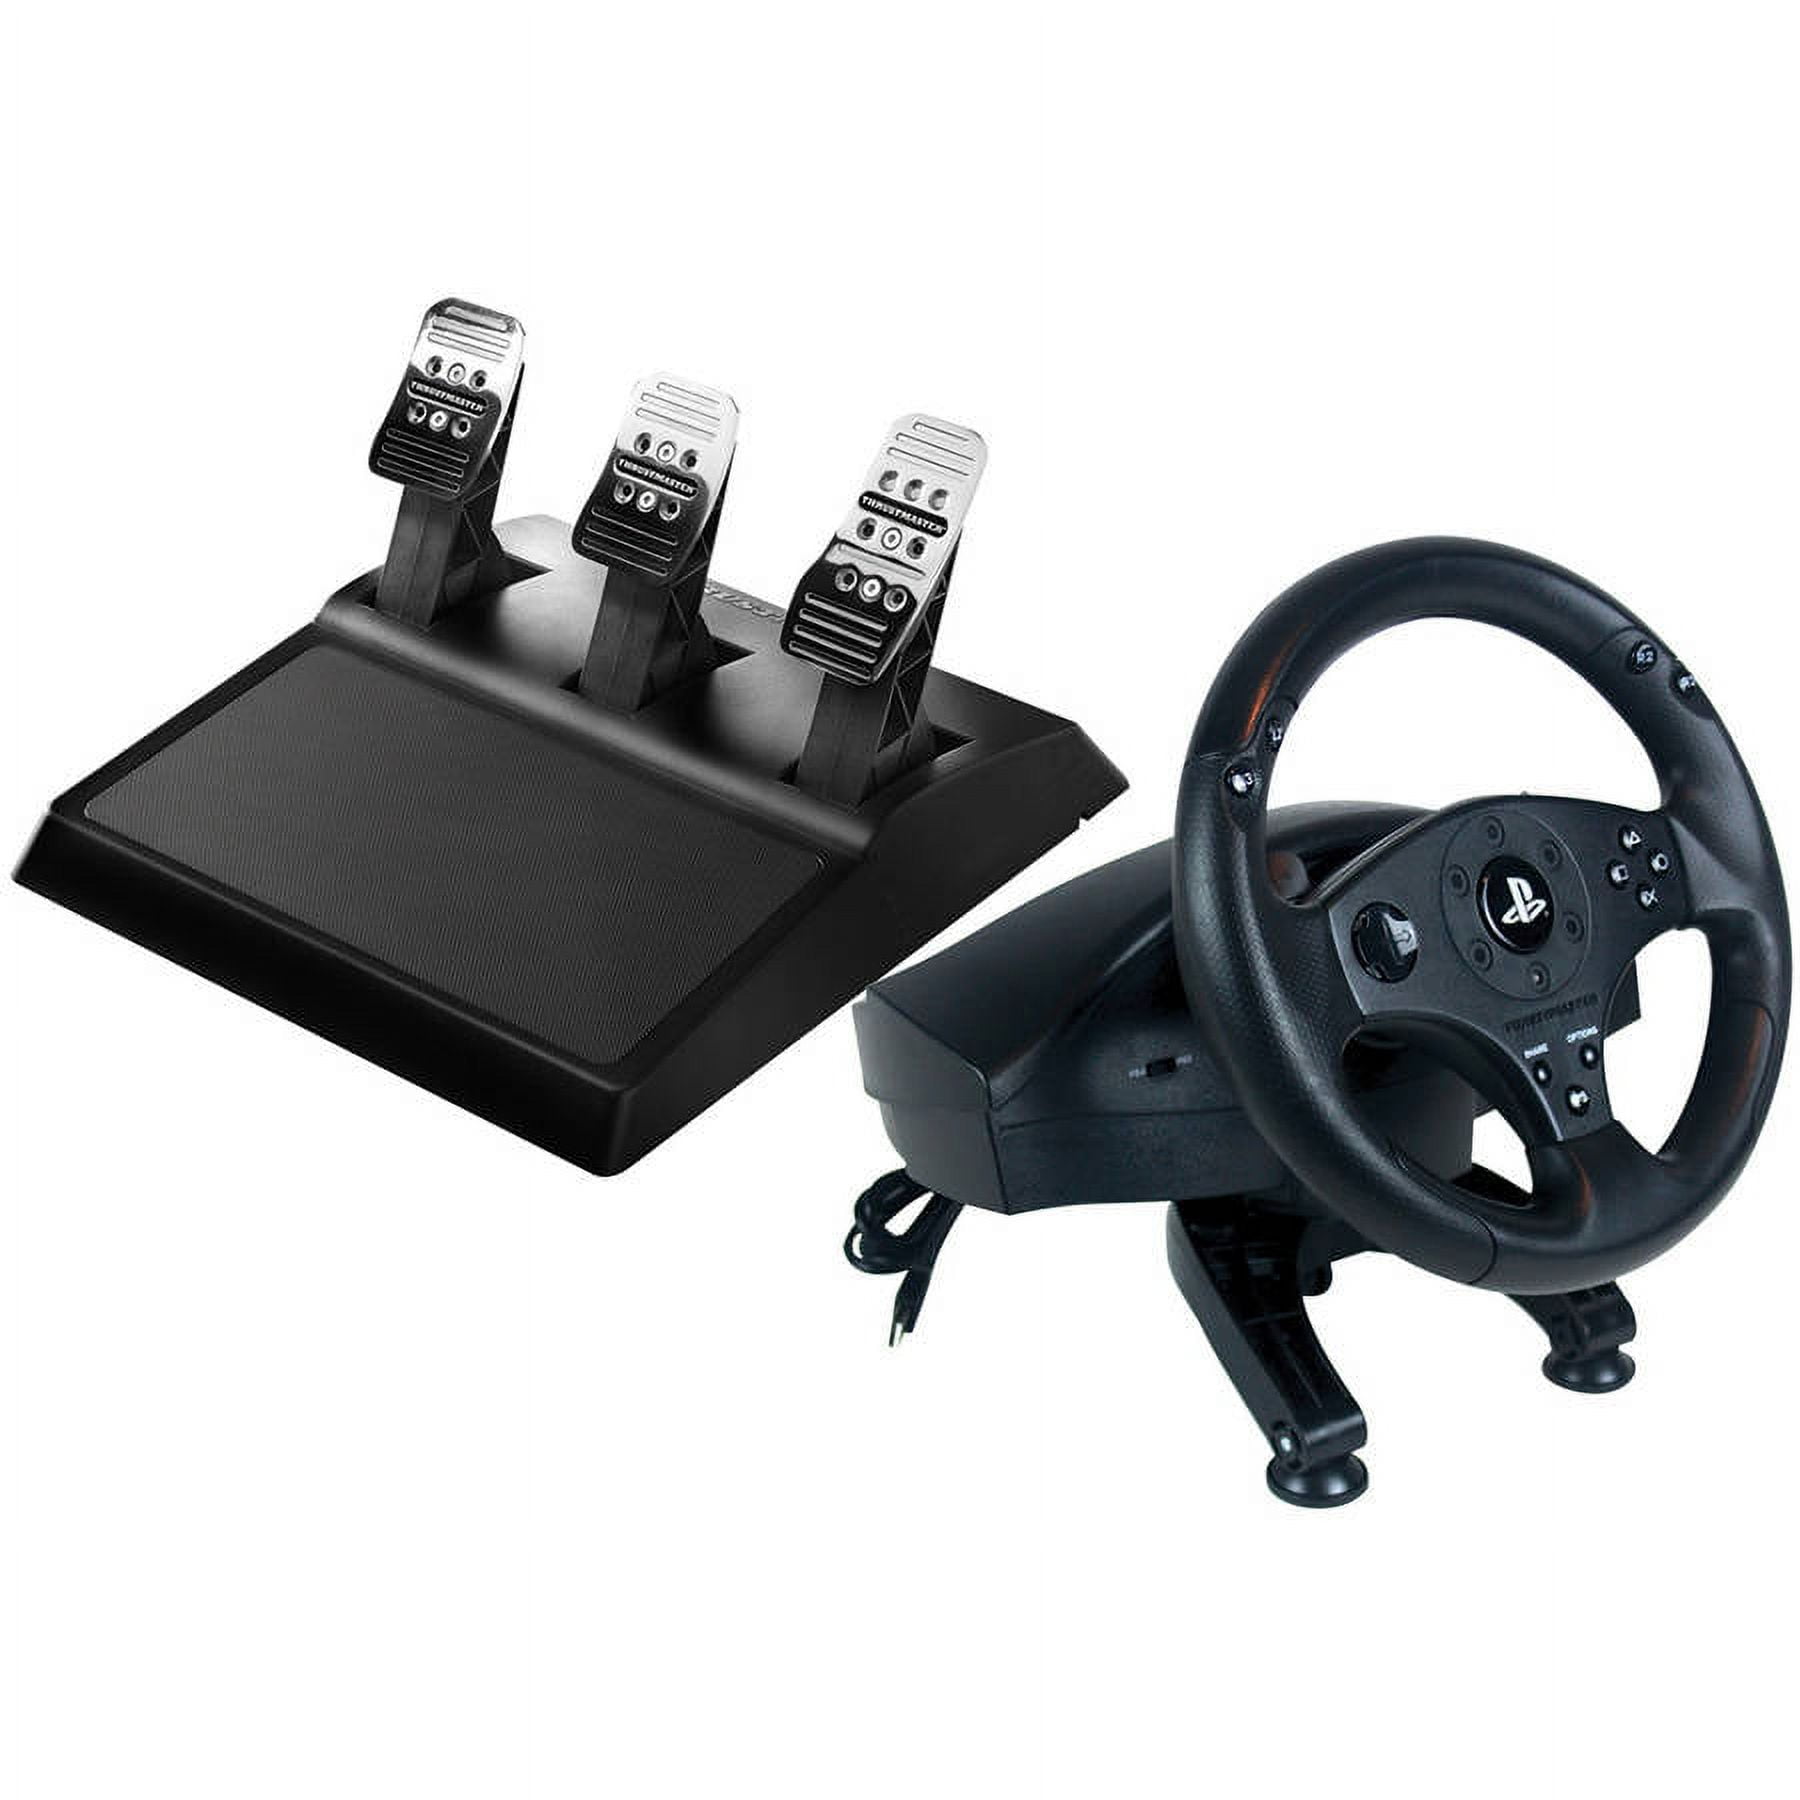  THRUSTMASTER Controller kit sterzo con pedaliera T80 RW per  PS4 (licenza ufficiale Sony)